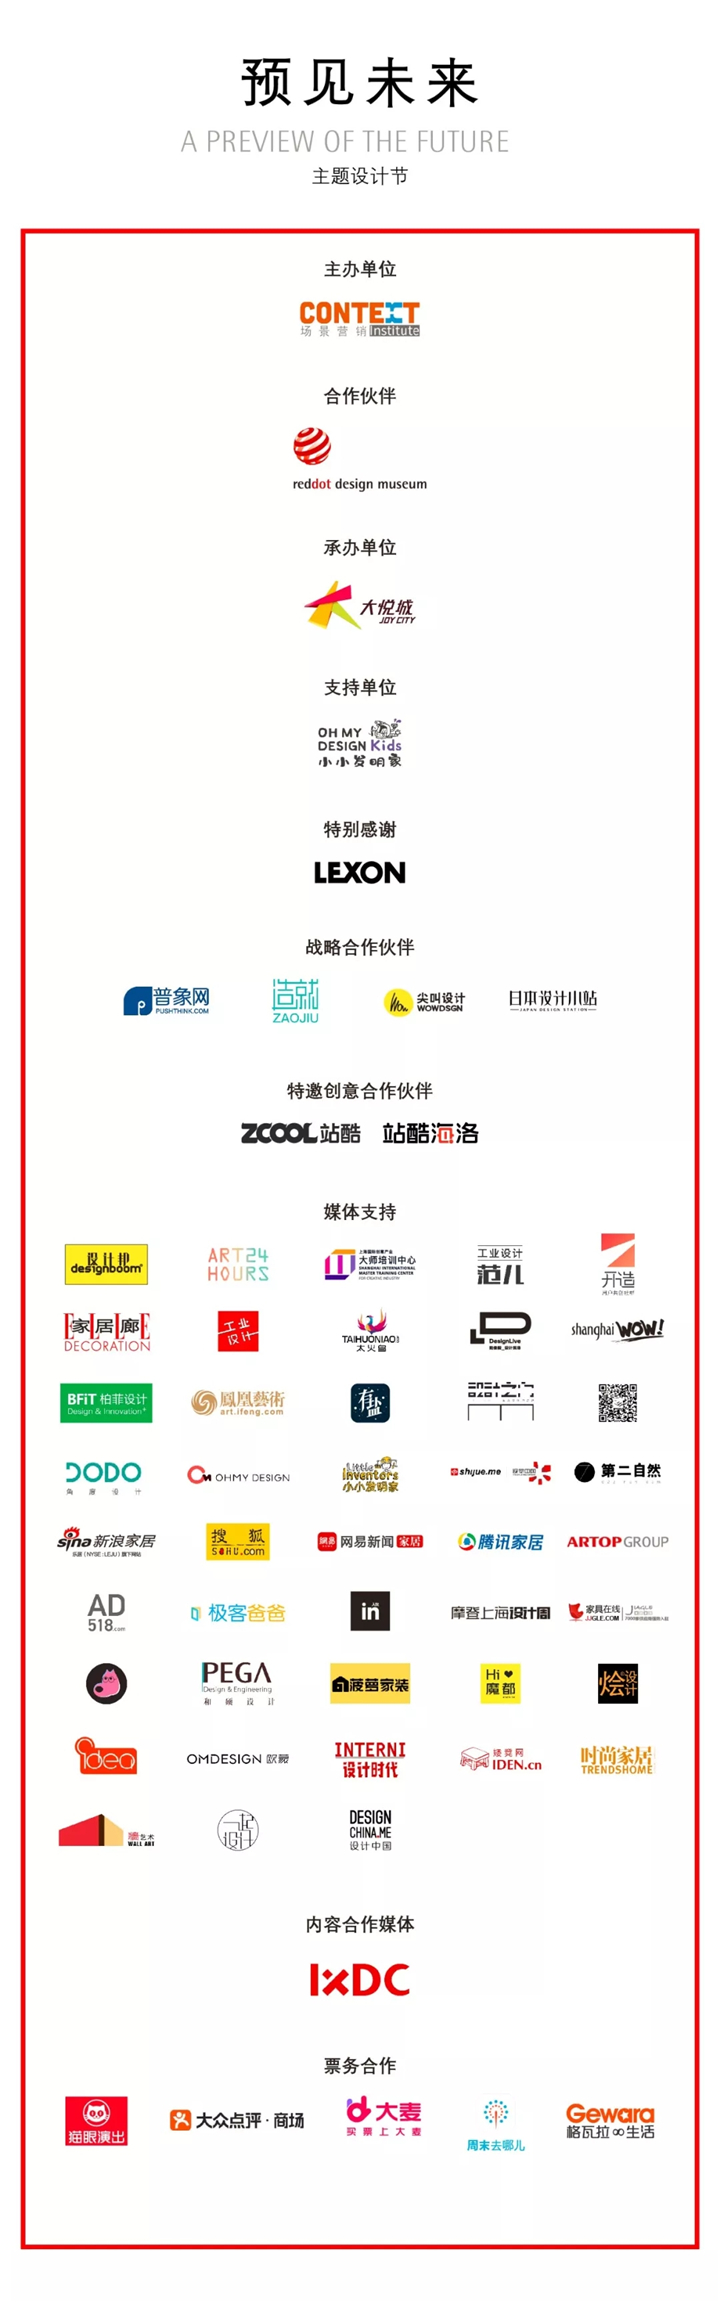 55个国家333件最新设计！红点设计概念获奖作品展空降上海-设计中国